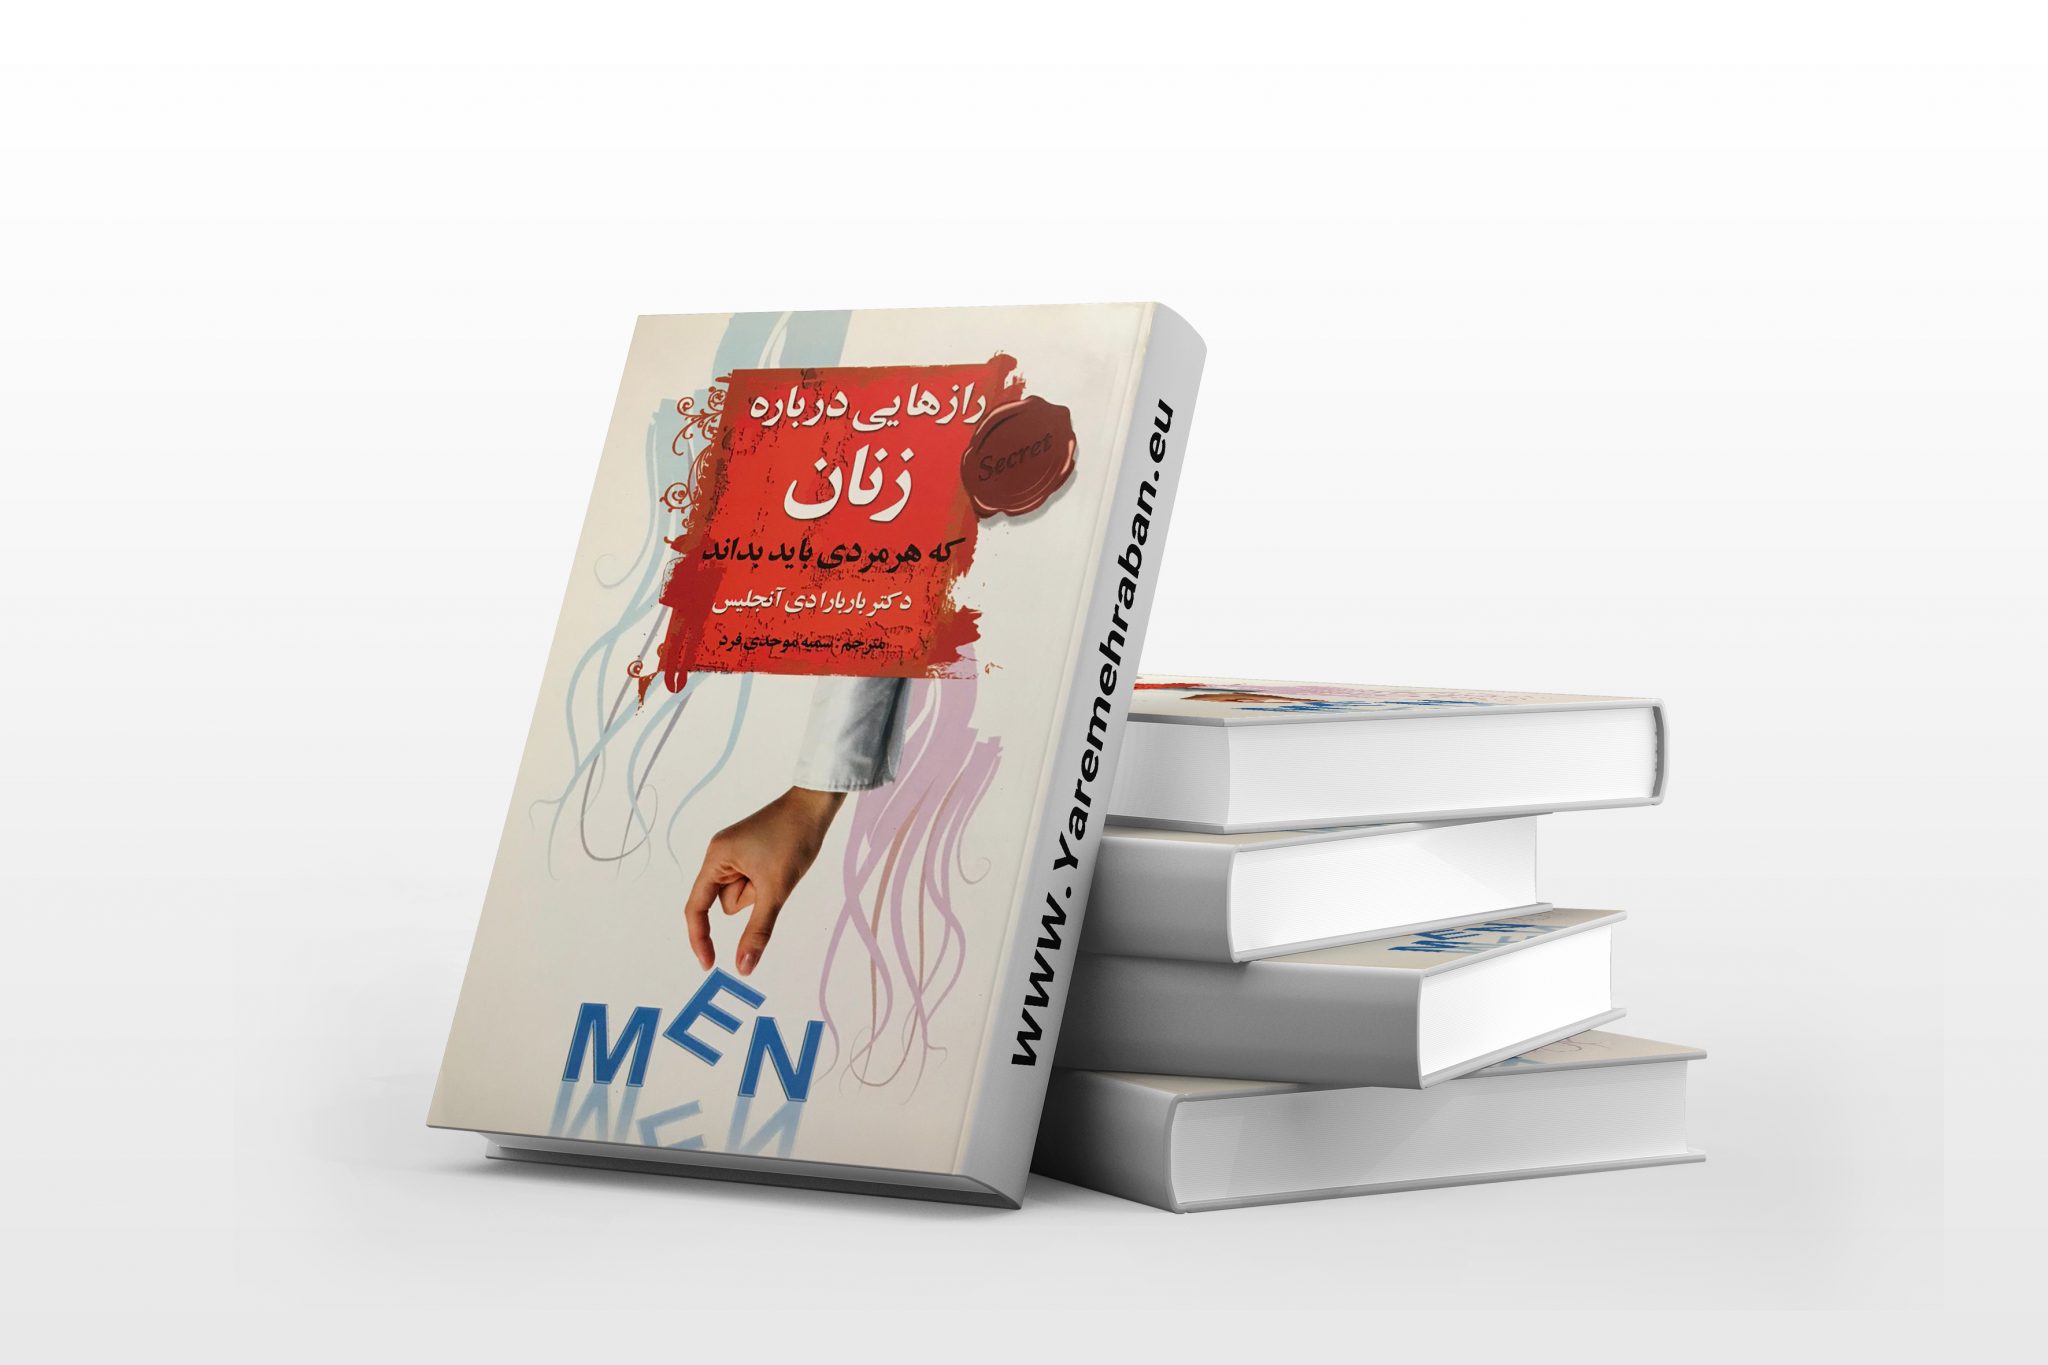 رازهایی درباره ی زنان که هر مردی باید بداند یار مهربان کتابفروشی فارسی در اروپا 5917